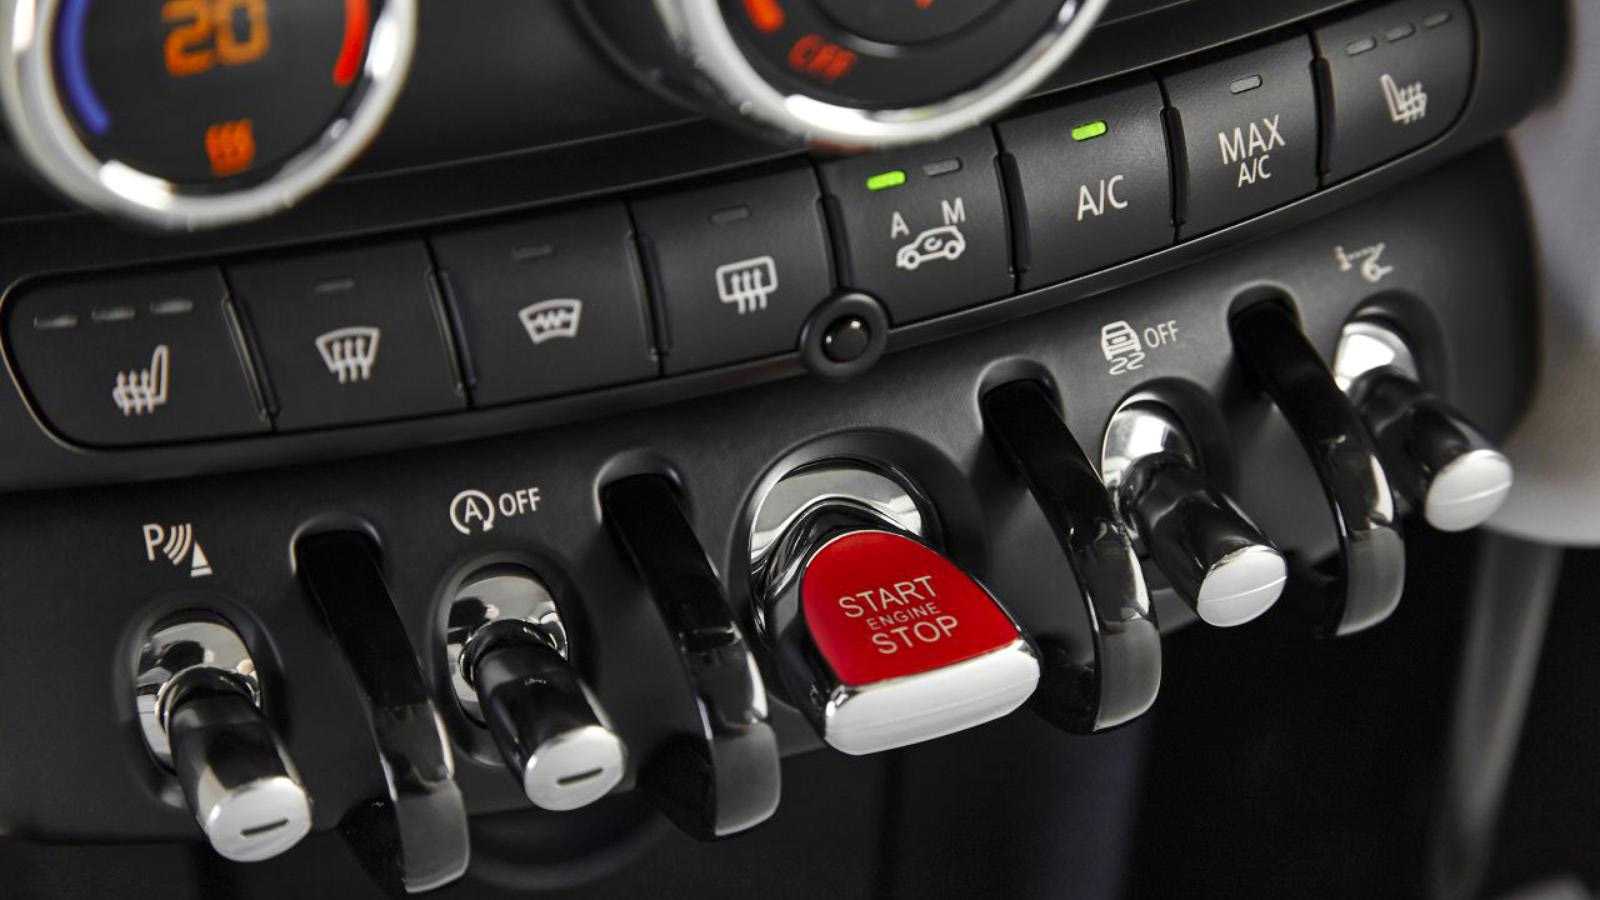 Что означает каждая кнопка в машине